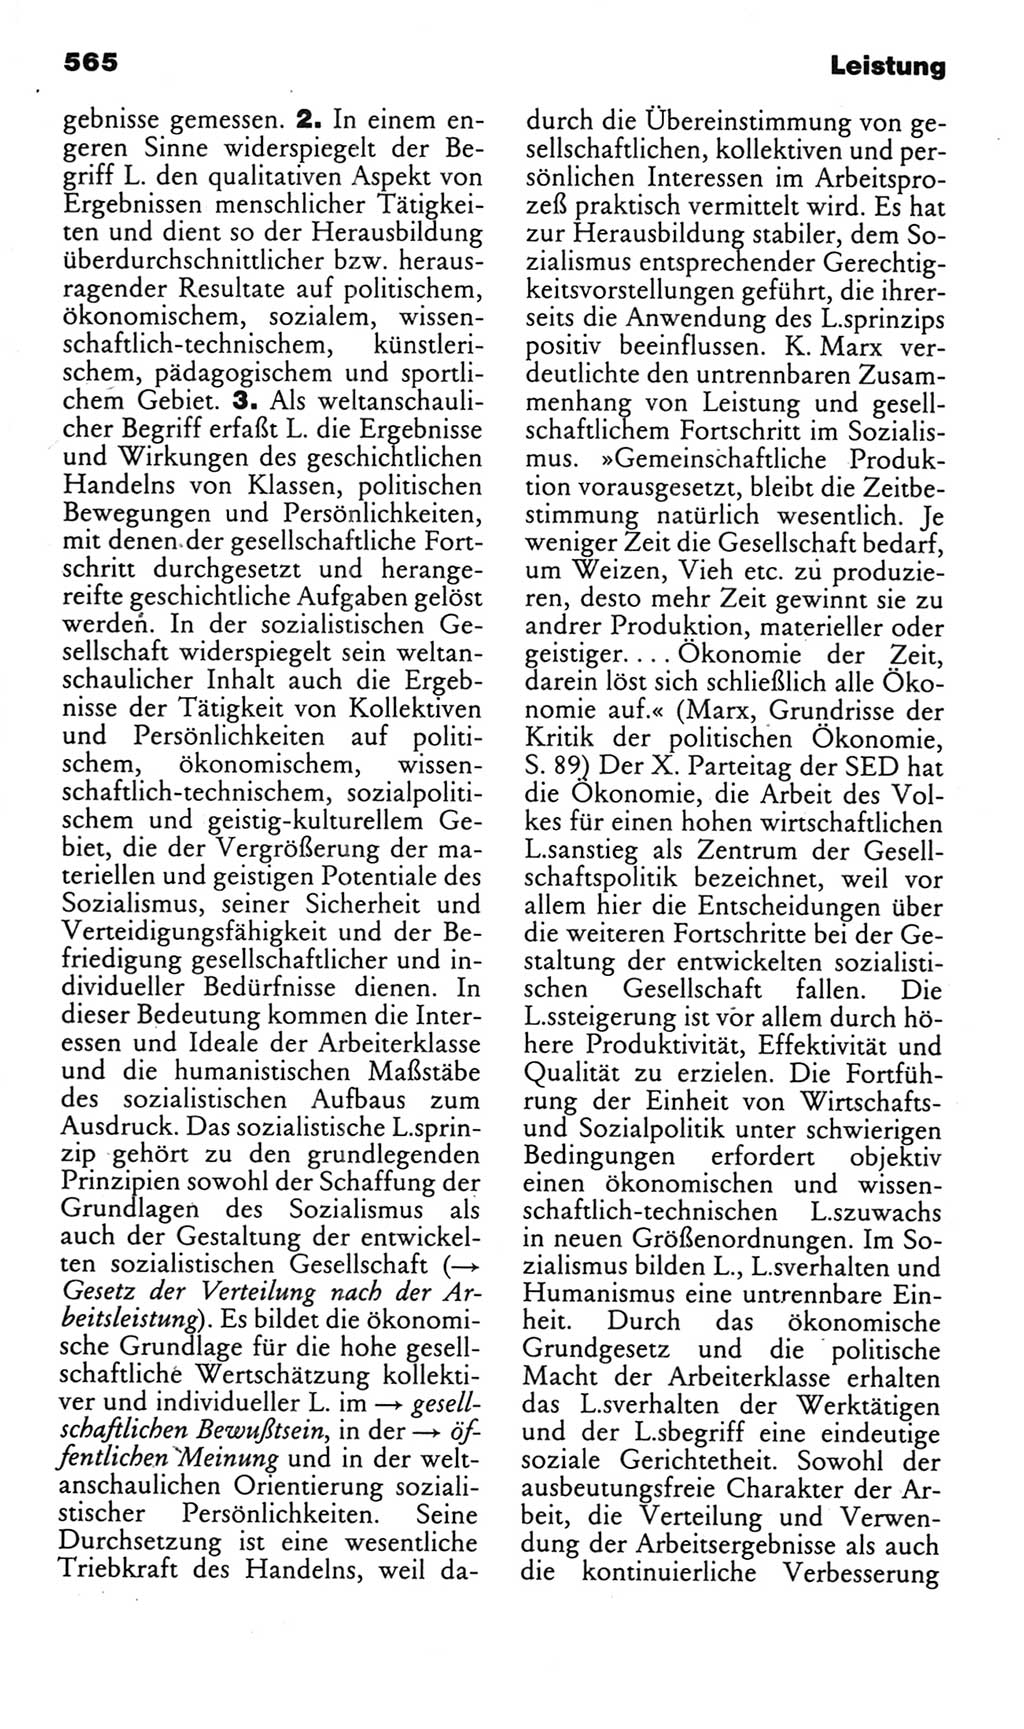 Kleines politisches Wörterbuch [Deutsche Demokratische Republik (DDR)] 1985, Seite 565 (Kl. pol. Wb. DDR 1985, S. 565)